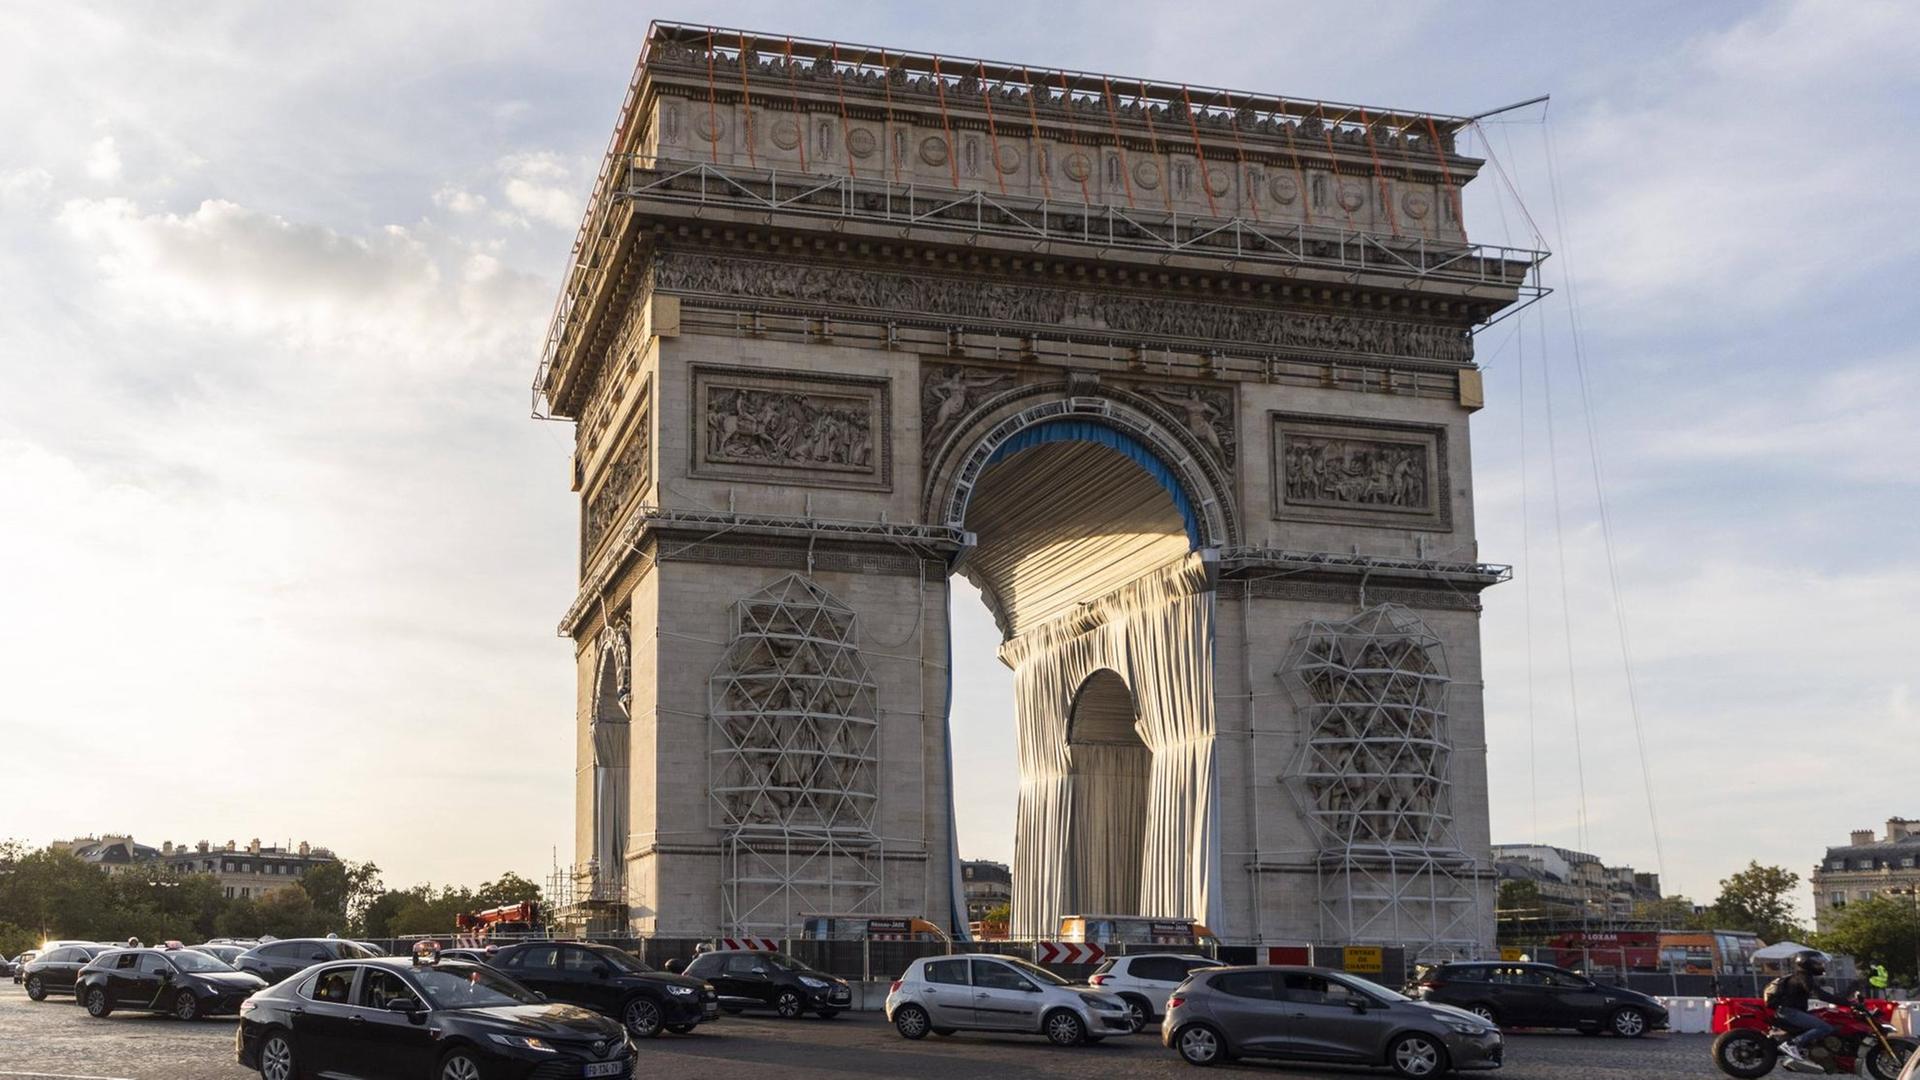 Der Arc de Triomphe in Paris mit Teilumhüllung des Christo-Projekts